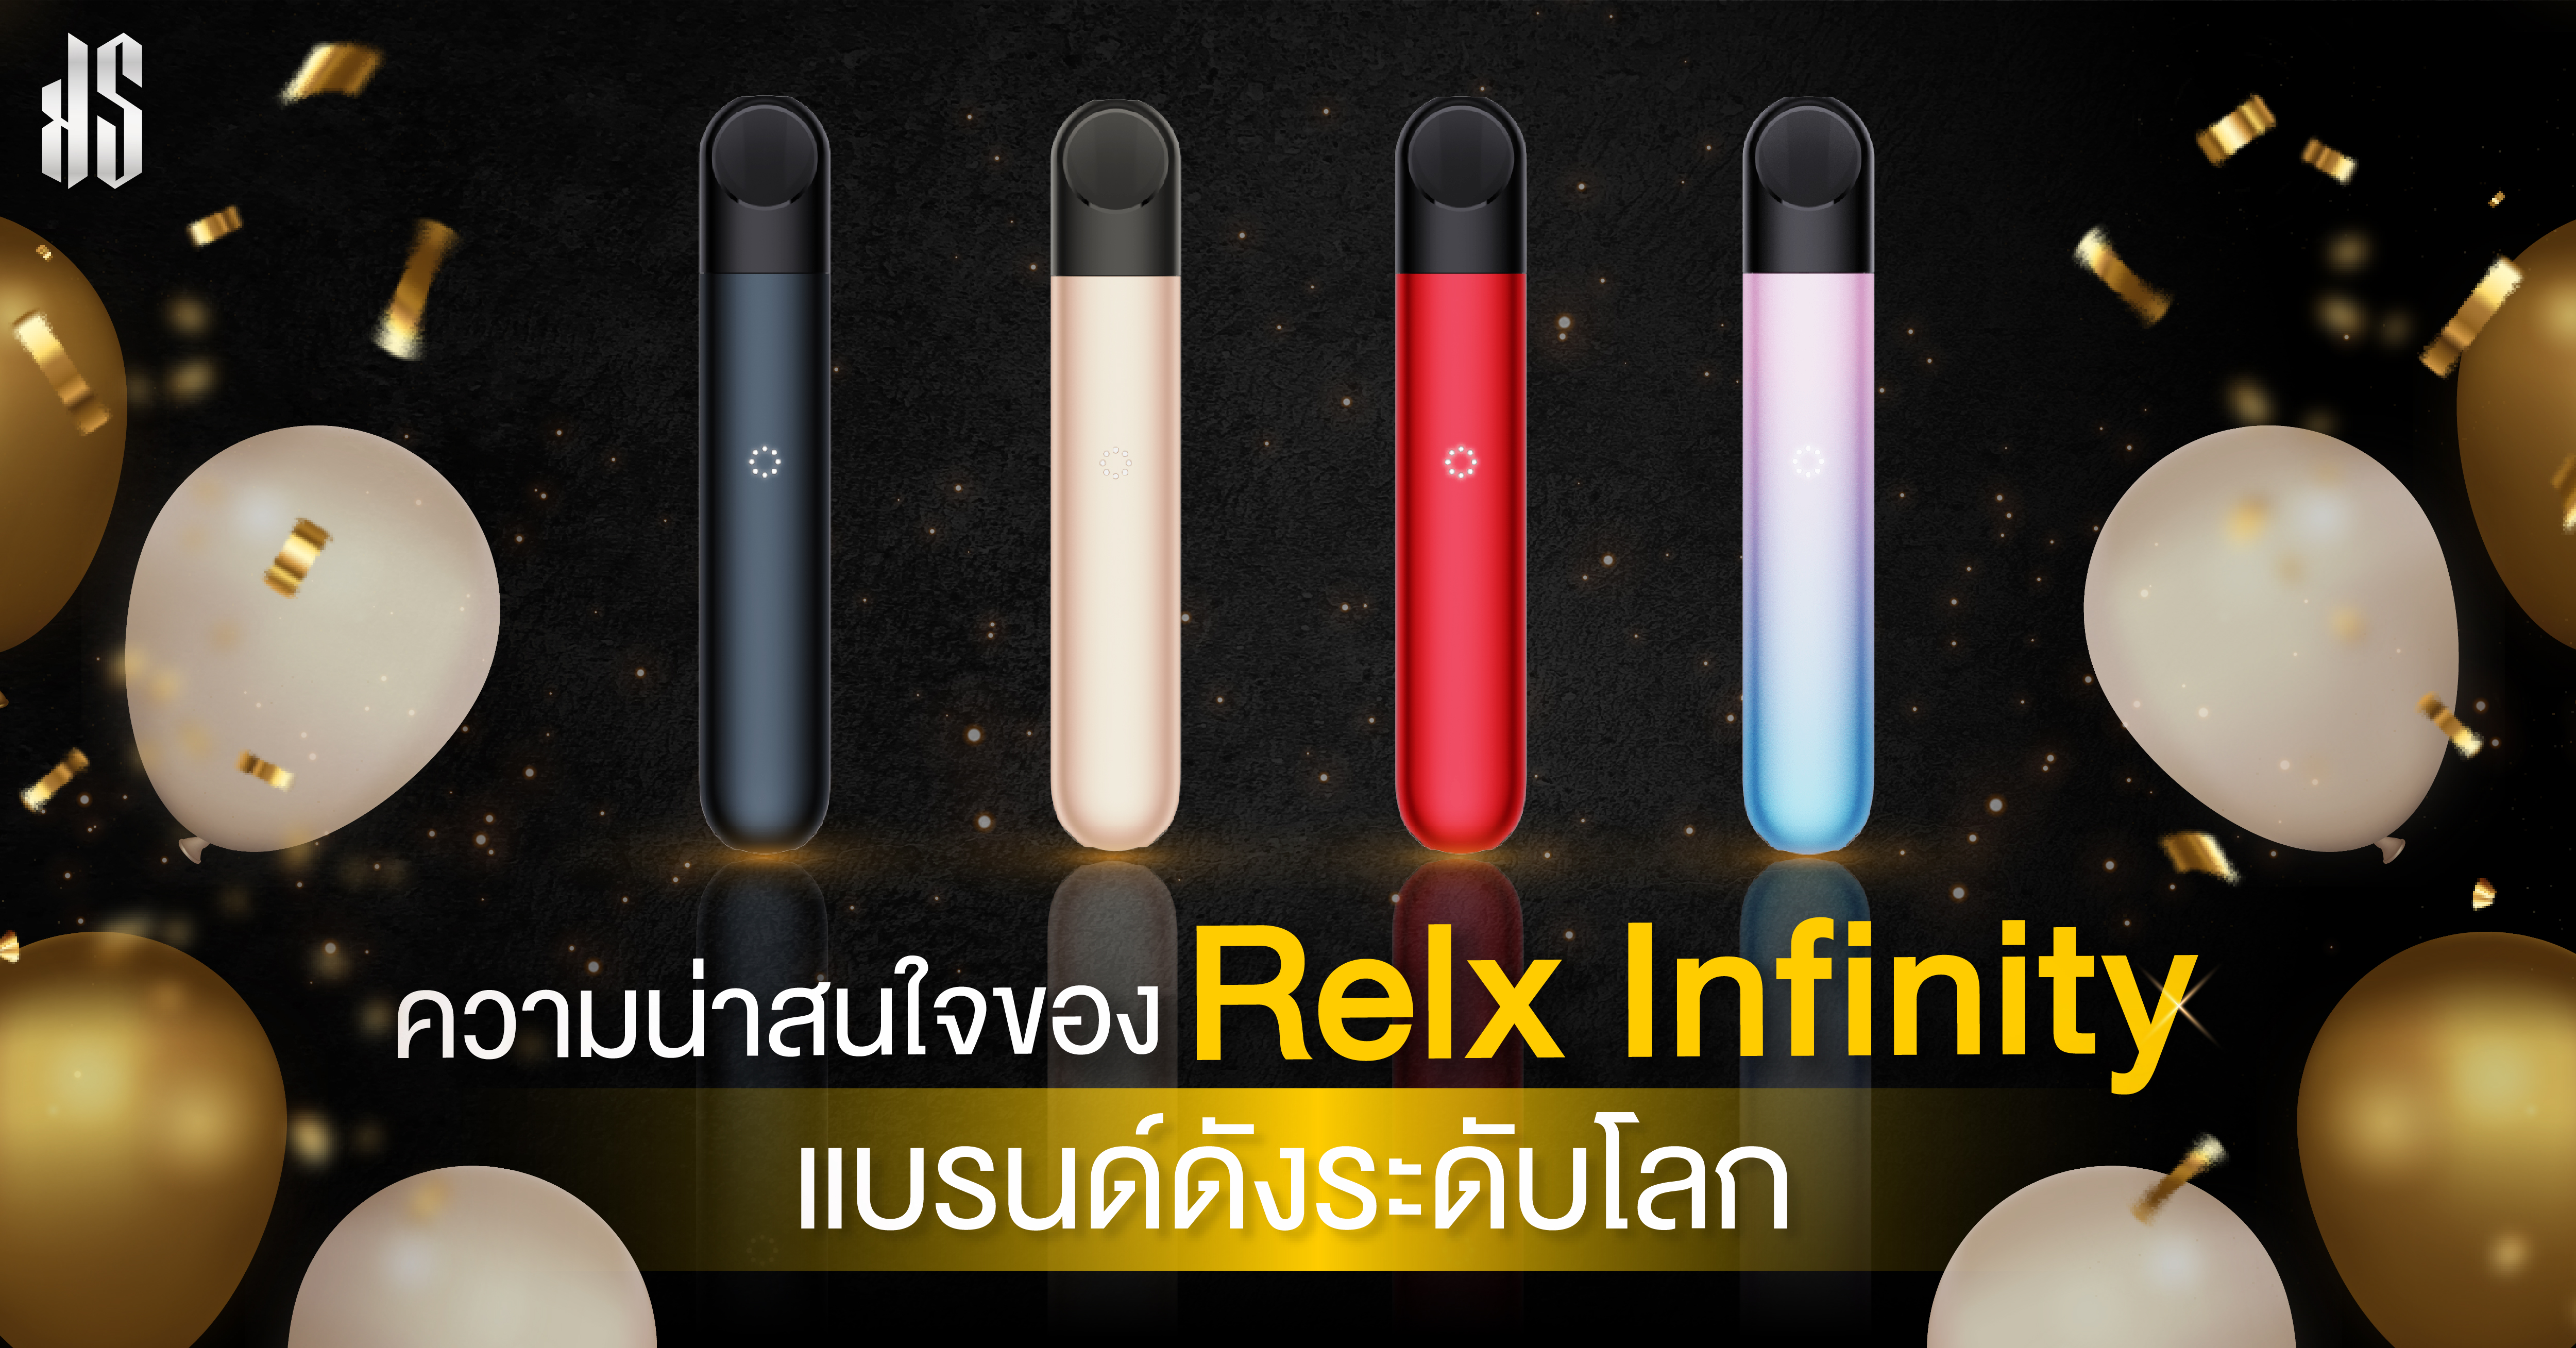 ความน่าสนใจของ Relx infinity แบรนด์ดังระดับโลก